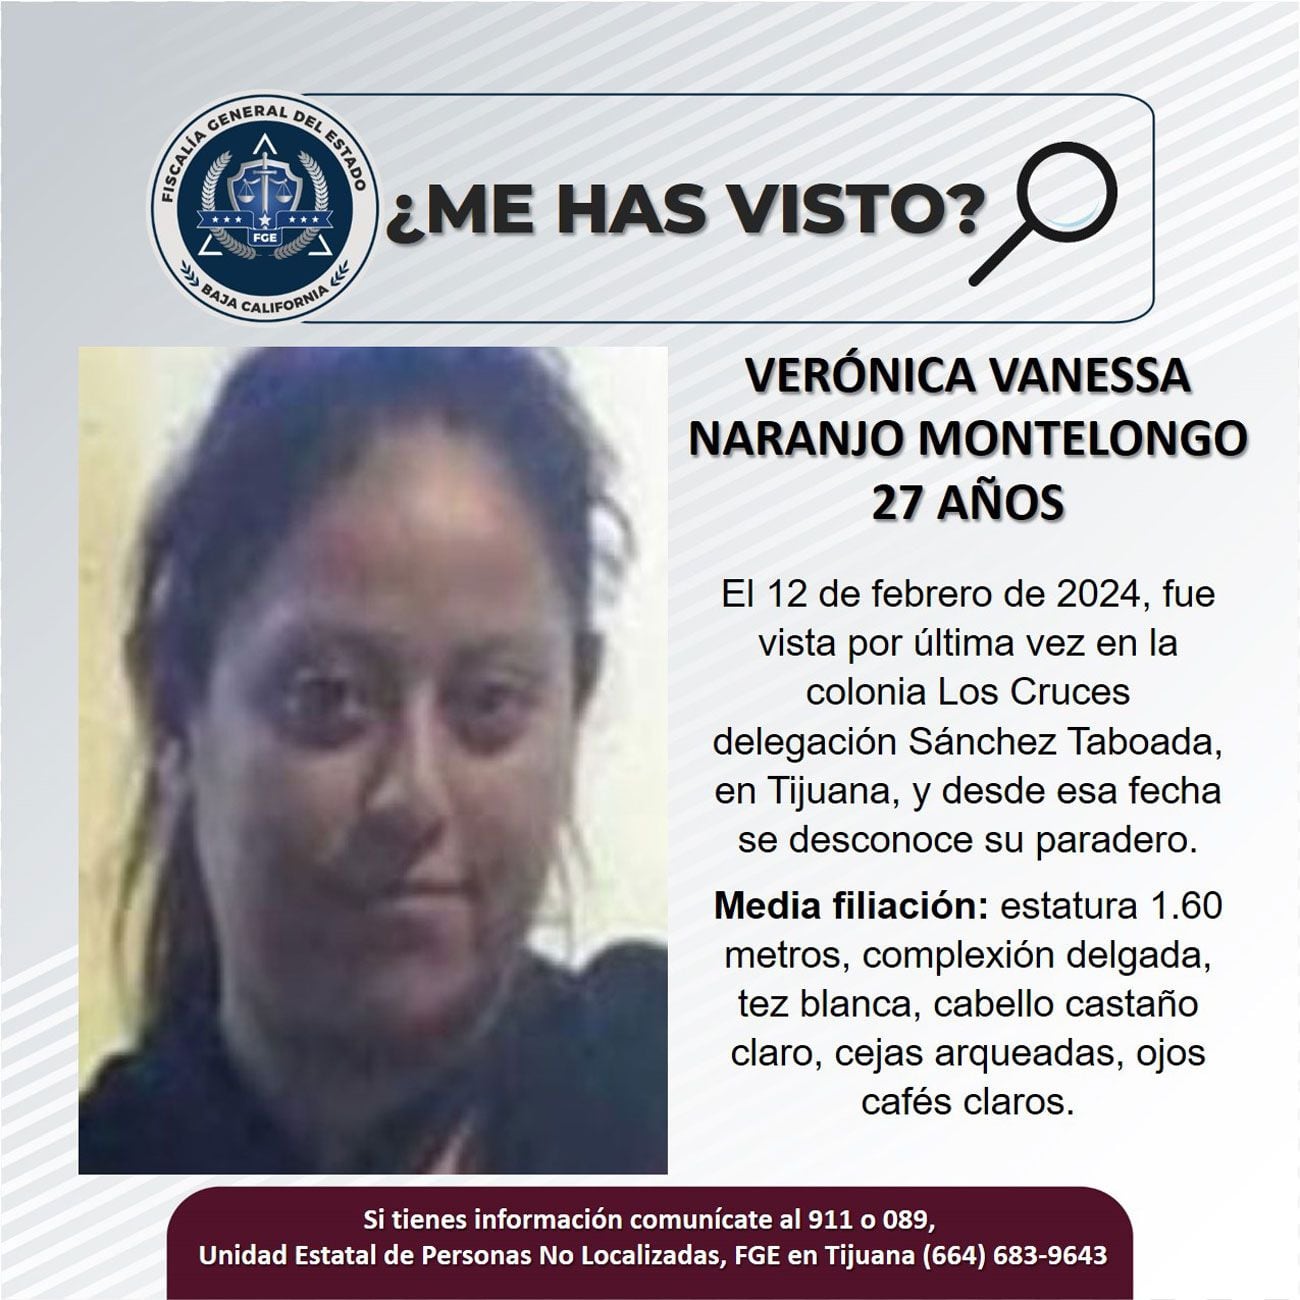 Pesquisa de Verónica Vanessa Naranjo Montelongo.